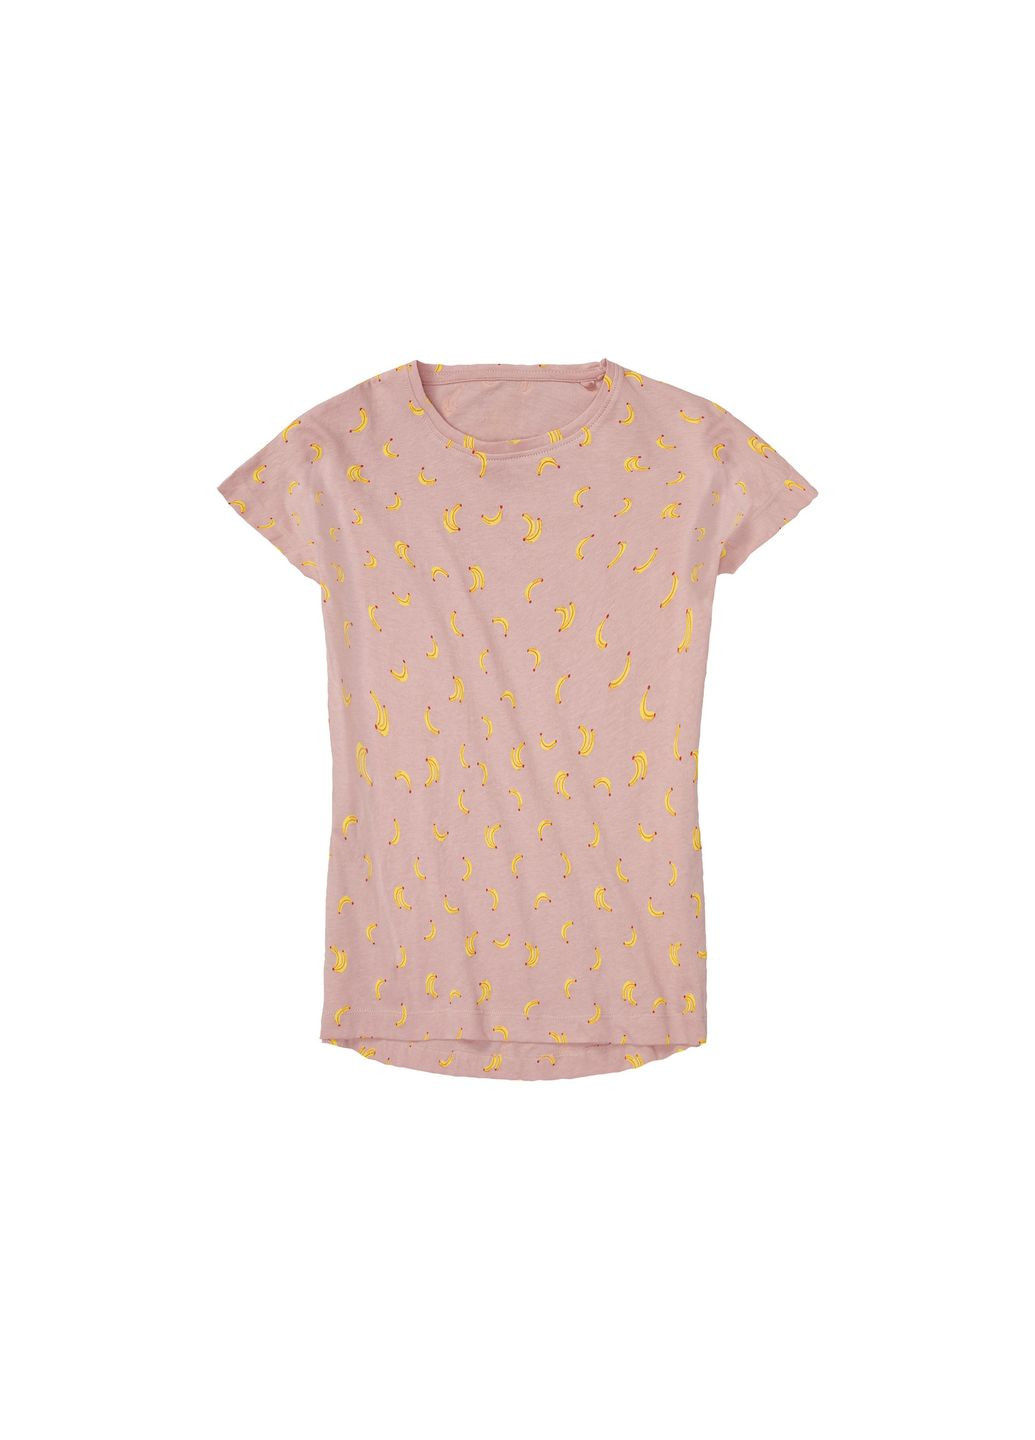 Рожева піжама (футболка і шорти) для дівчинки 409979 рожевий Pepperts